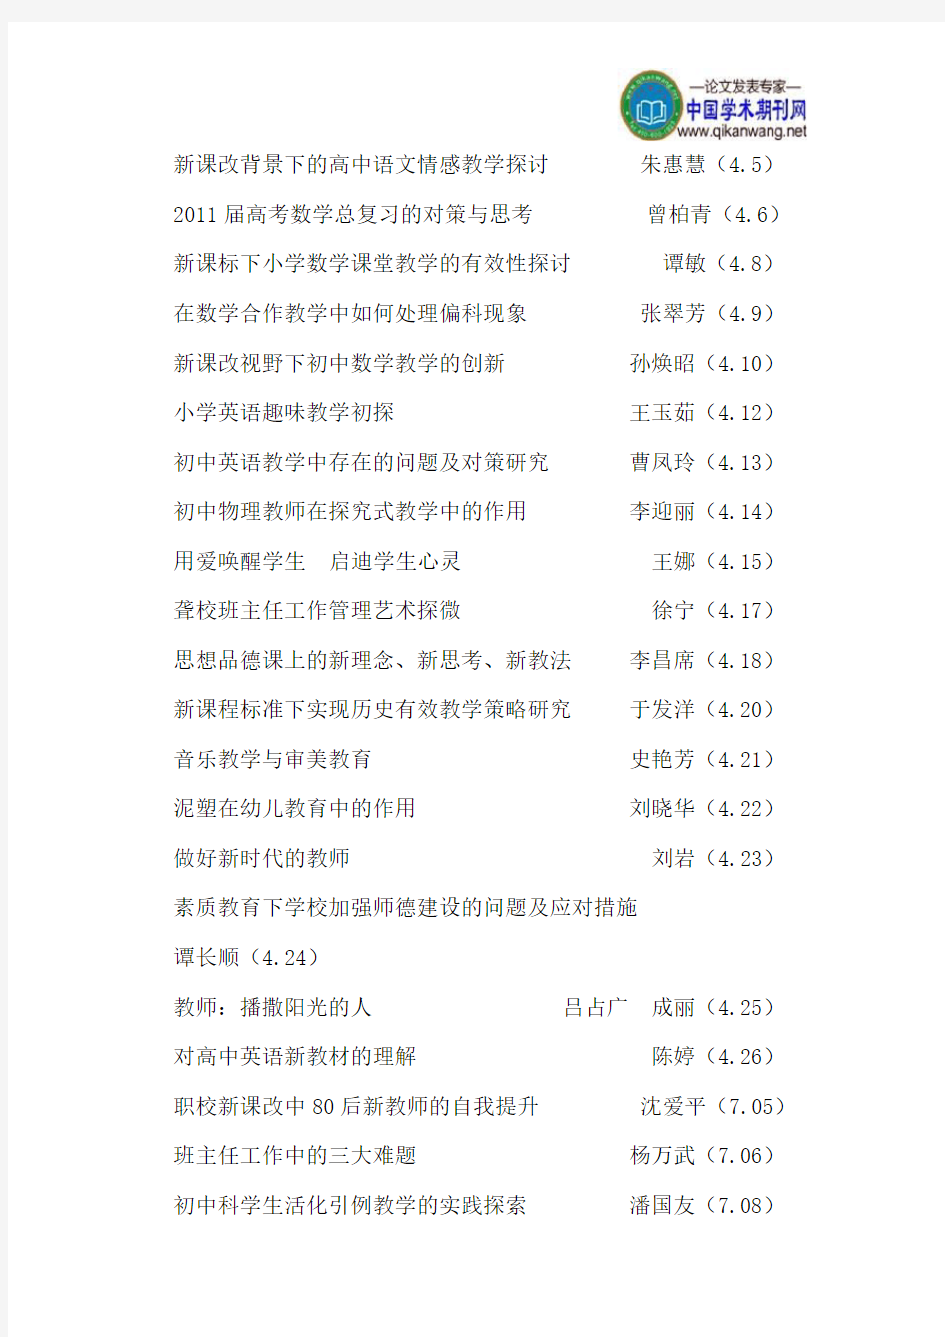 《中国教育技术装备》2011年总目录(上旬刊)